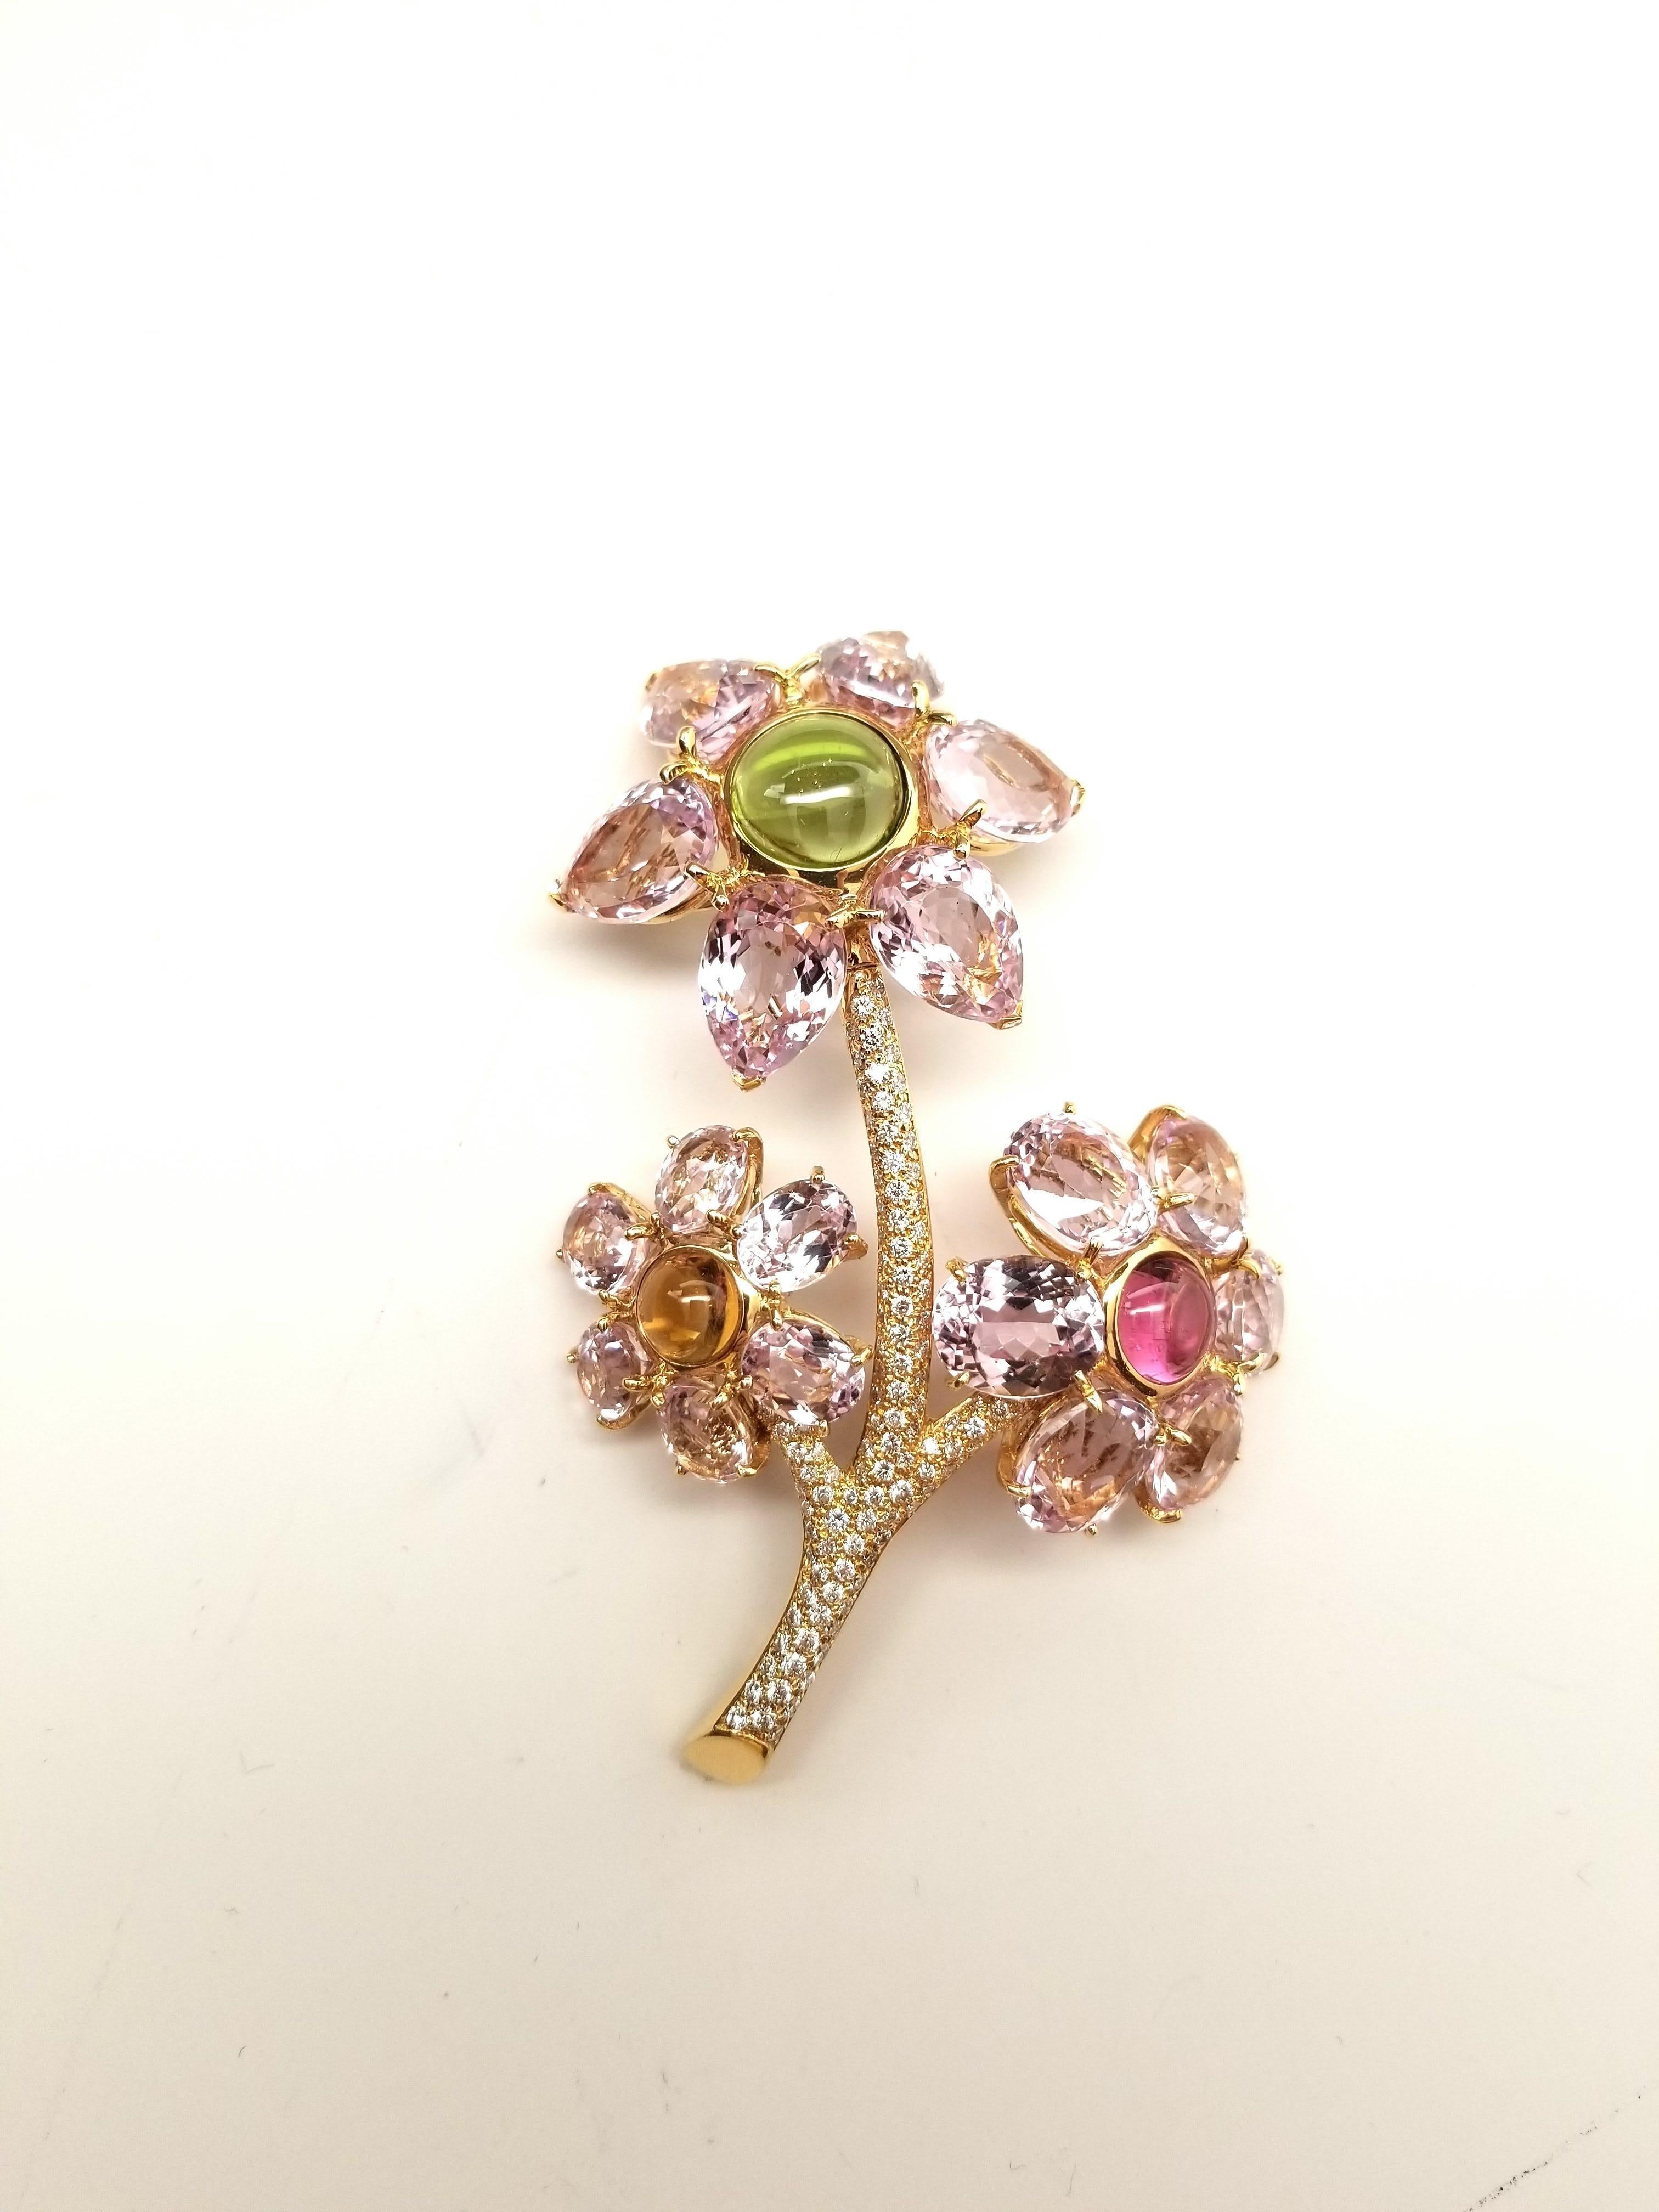 NEW GAL CERT Kunzite Tourmaline Diamond Flower Brooch 18K Gold LFPARIS Mark For Sale 1